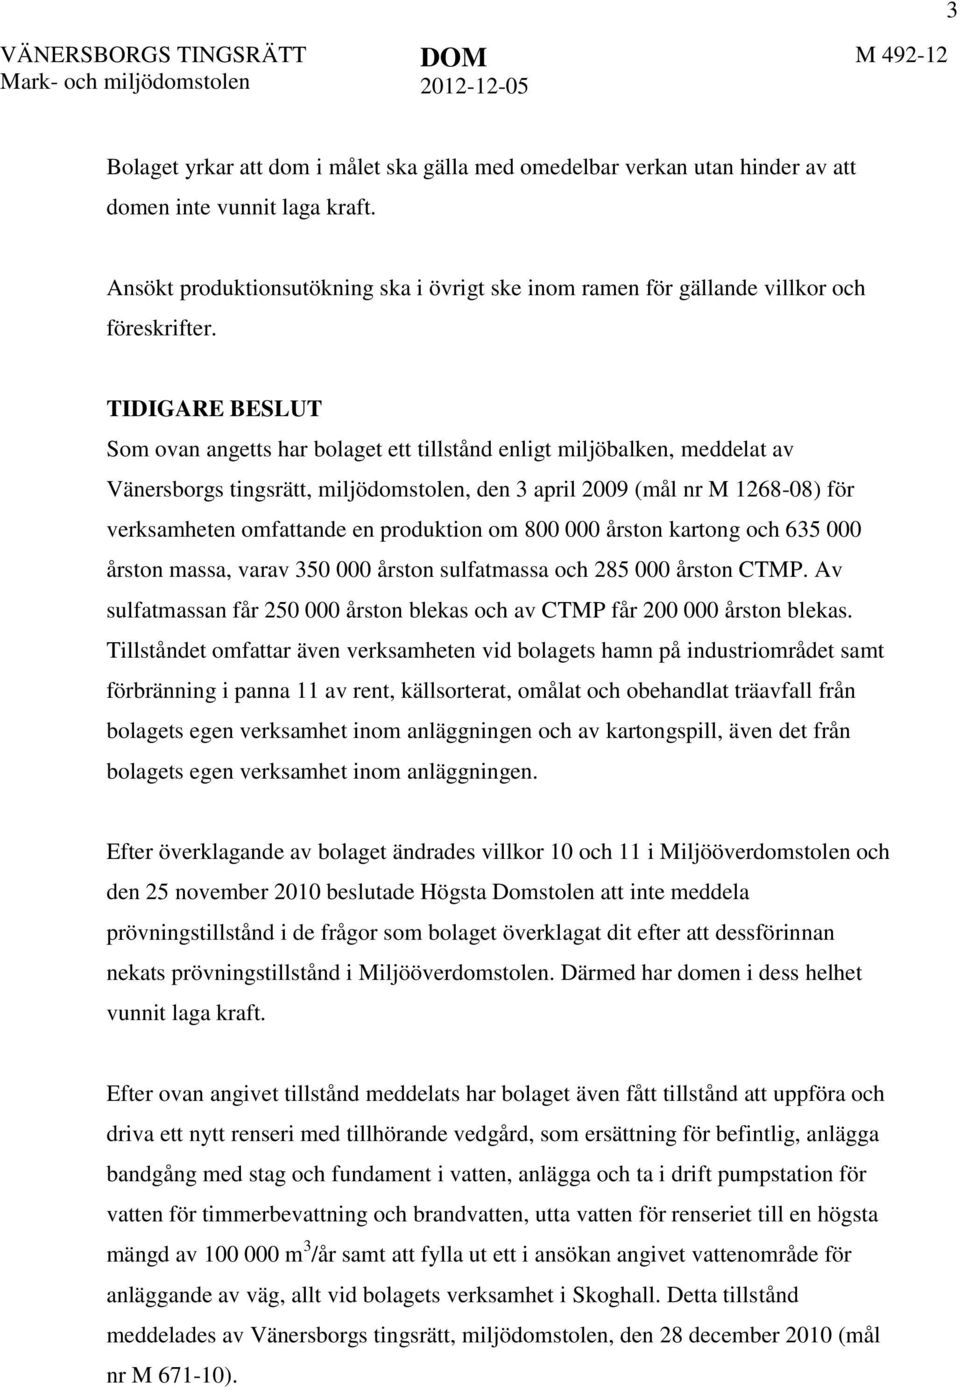 TIDIGARE BESLUT Som ovan angetts har bolaget ett tillstånd enligt miljöbalken, meddelat av Vänersborgs tingsrätt, miljödomstolen, den 3 april 2009 (mål nr M 1268-08) för verksamheten omfattande en